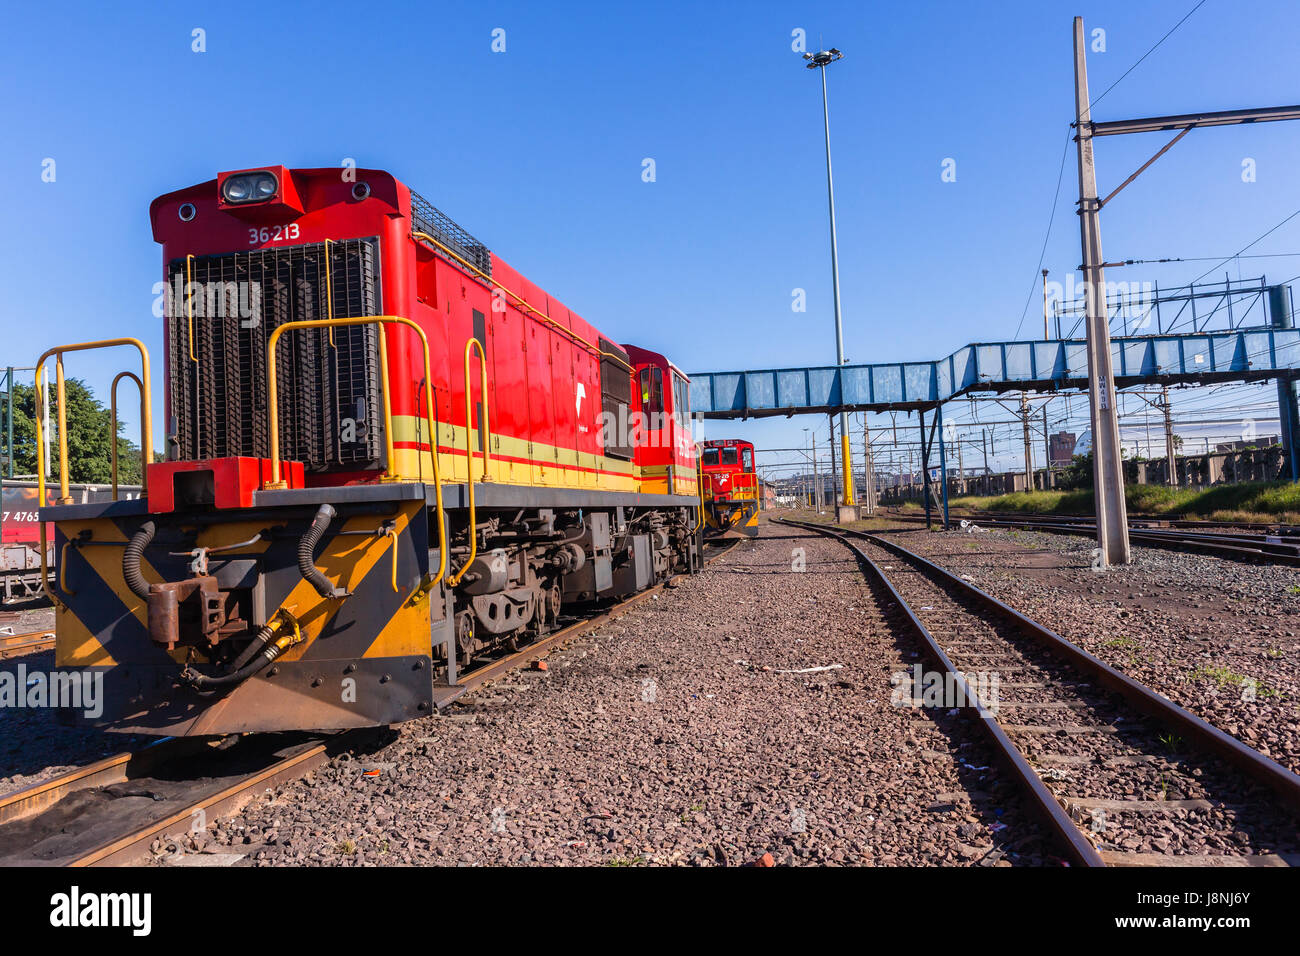 Treni locomotive macchine diesel di binari ferroviari paesaggio. Foto Stock